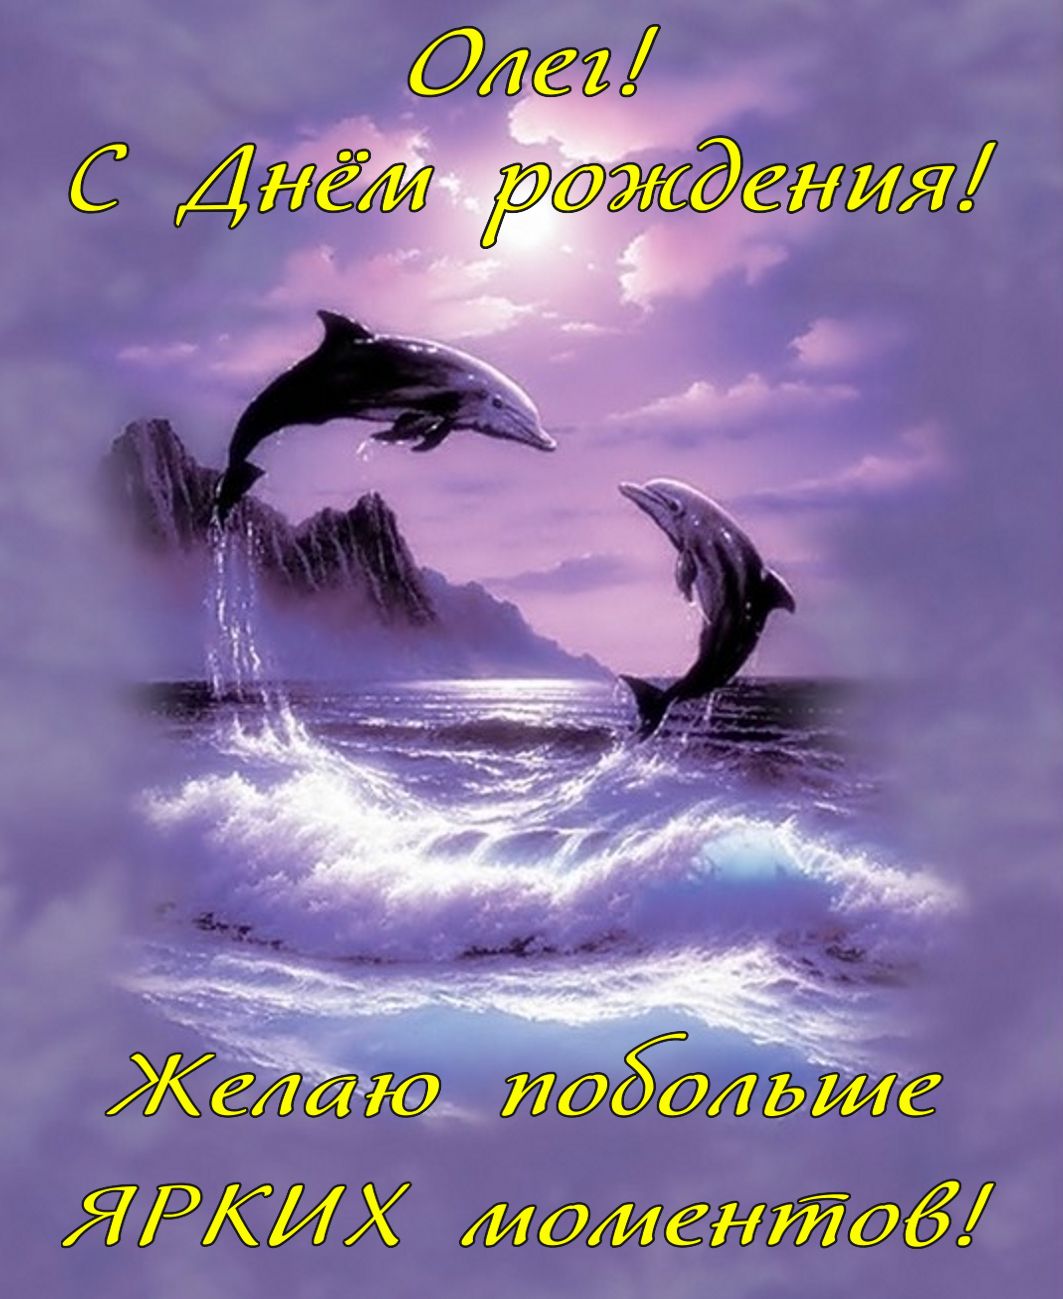 Картинка Олегу на День рождения с дельфинами в море